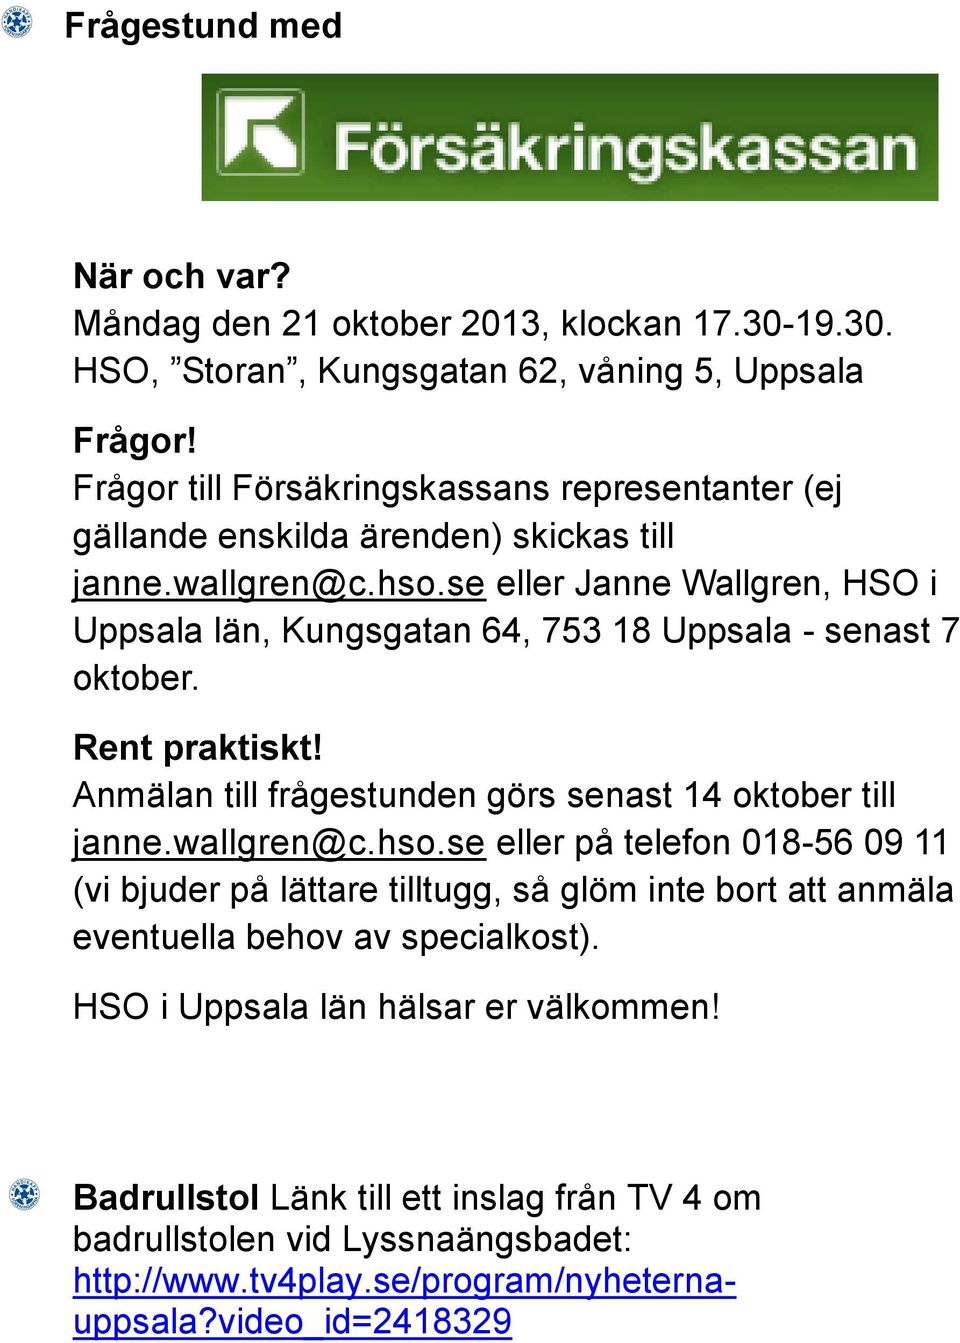 se eller Janne Wallgren, HSO i Uppsala län, Kungsgatan 64, 753 18 Uppsala - senast 7 oktober. Rent praktiskt! Anmälan till frågestunden görs senast 14 oktober till janne.wallgren@c.hso.